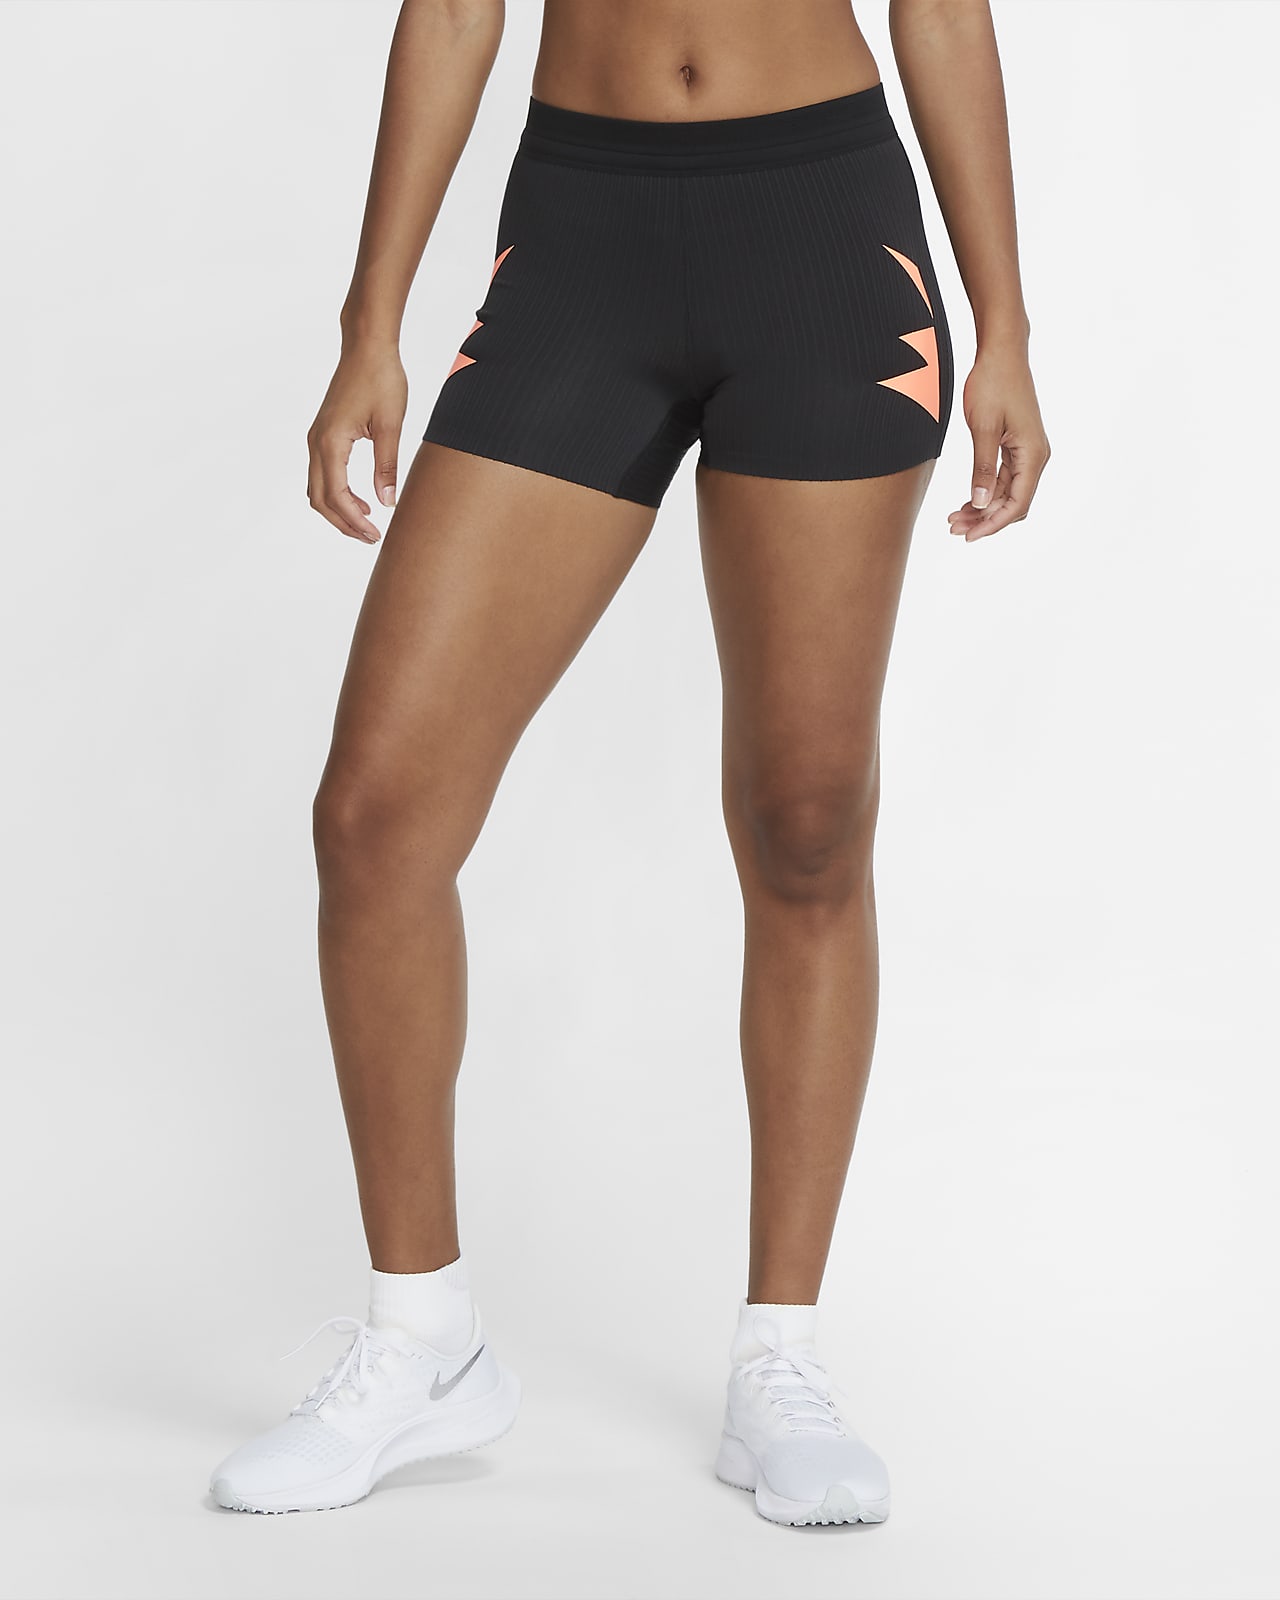 nike women's tight running shorts